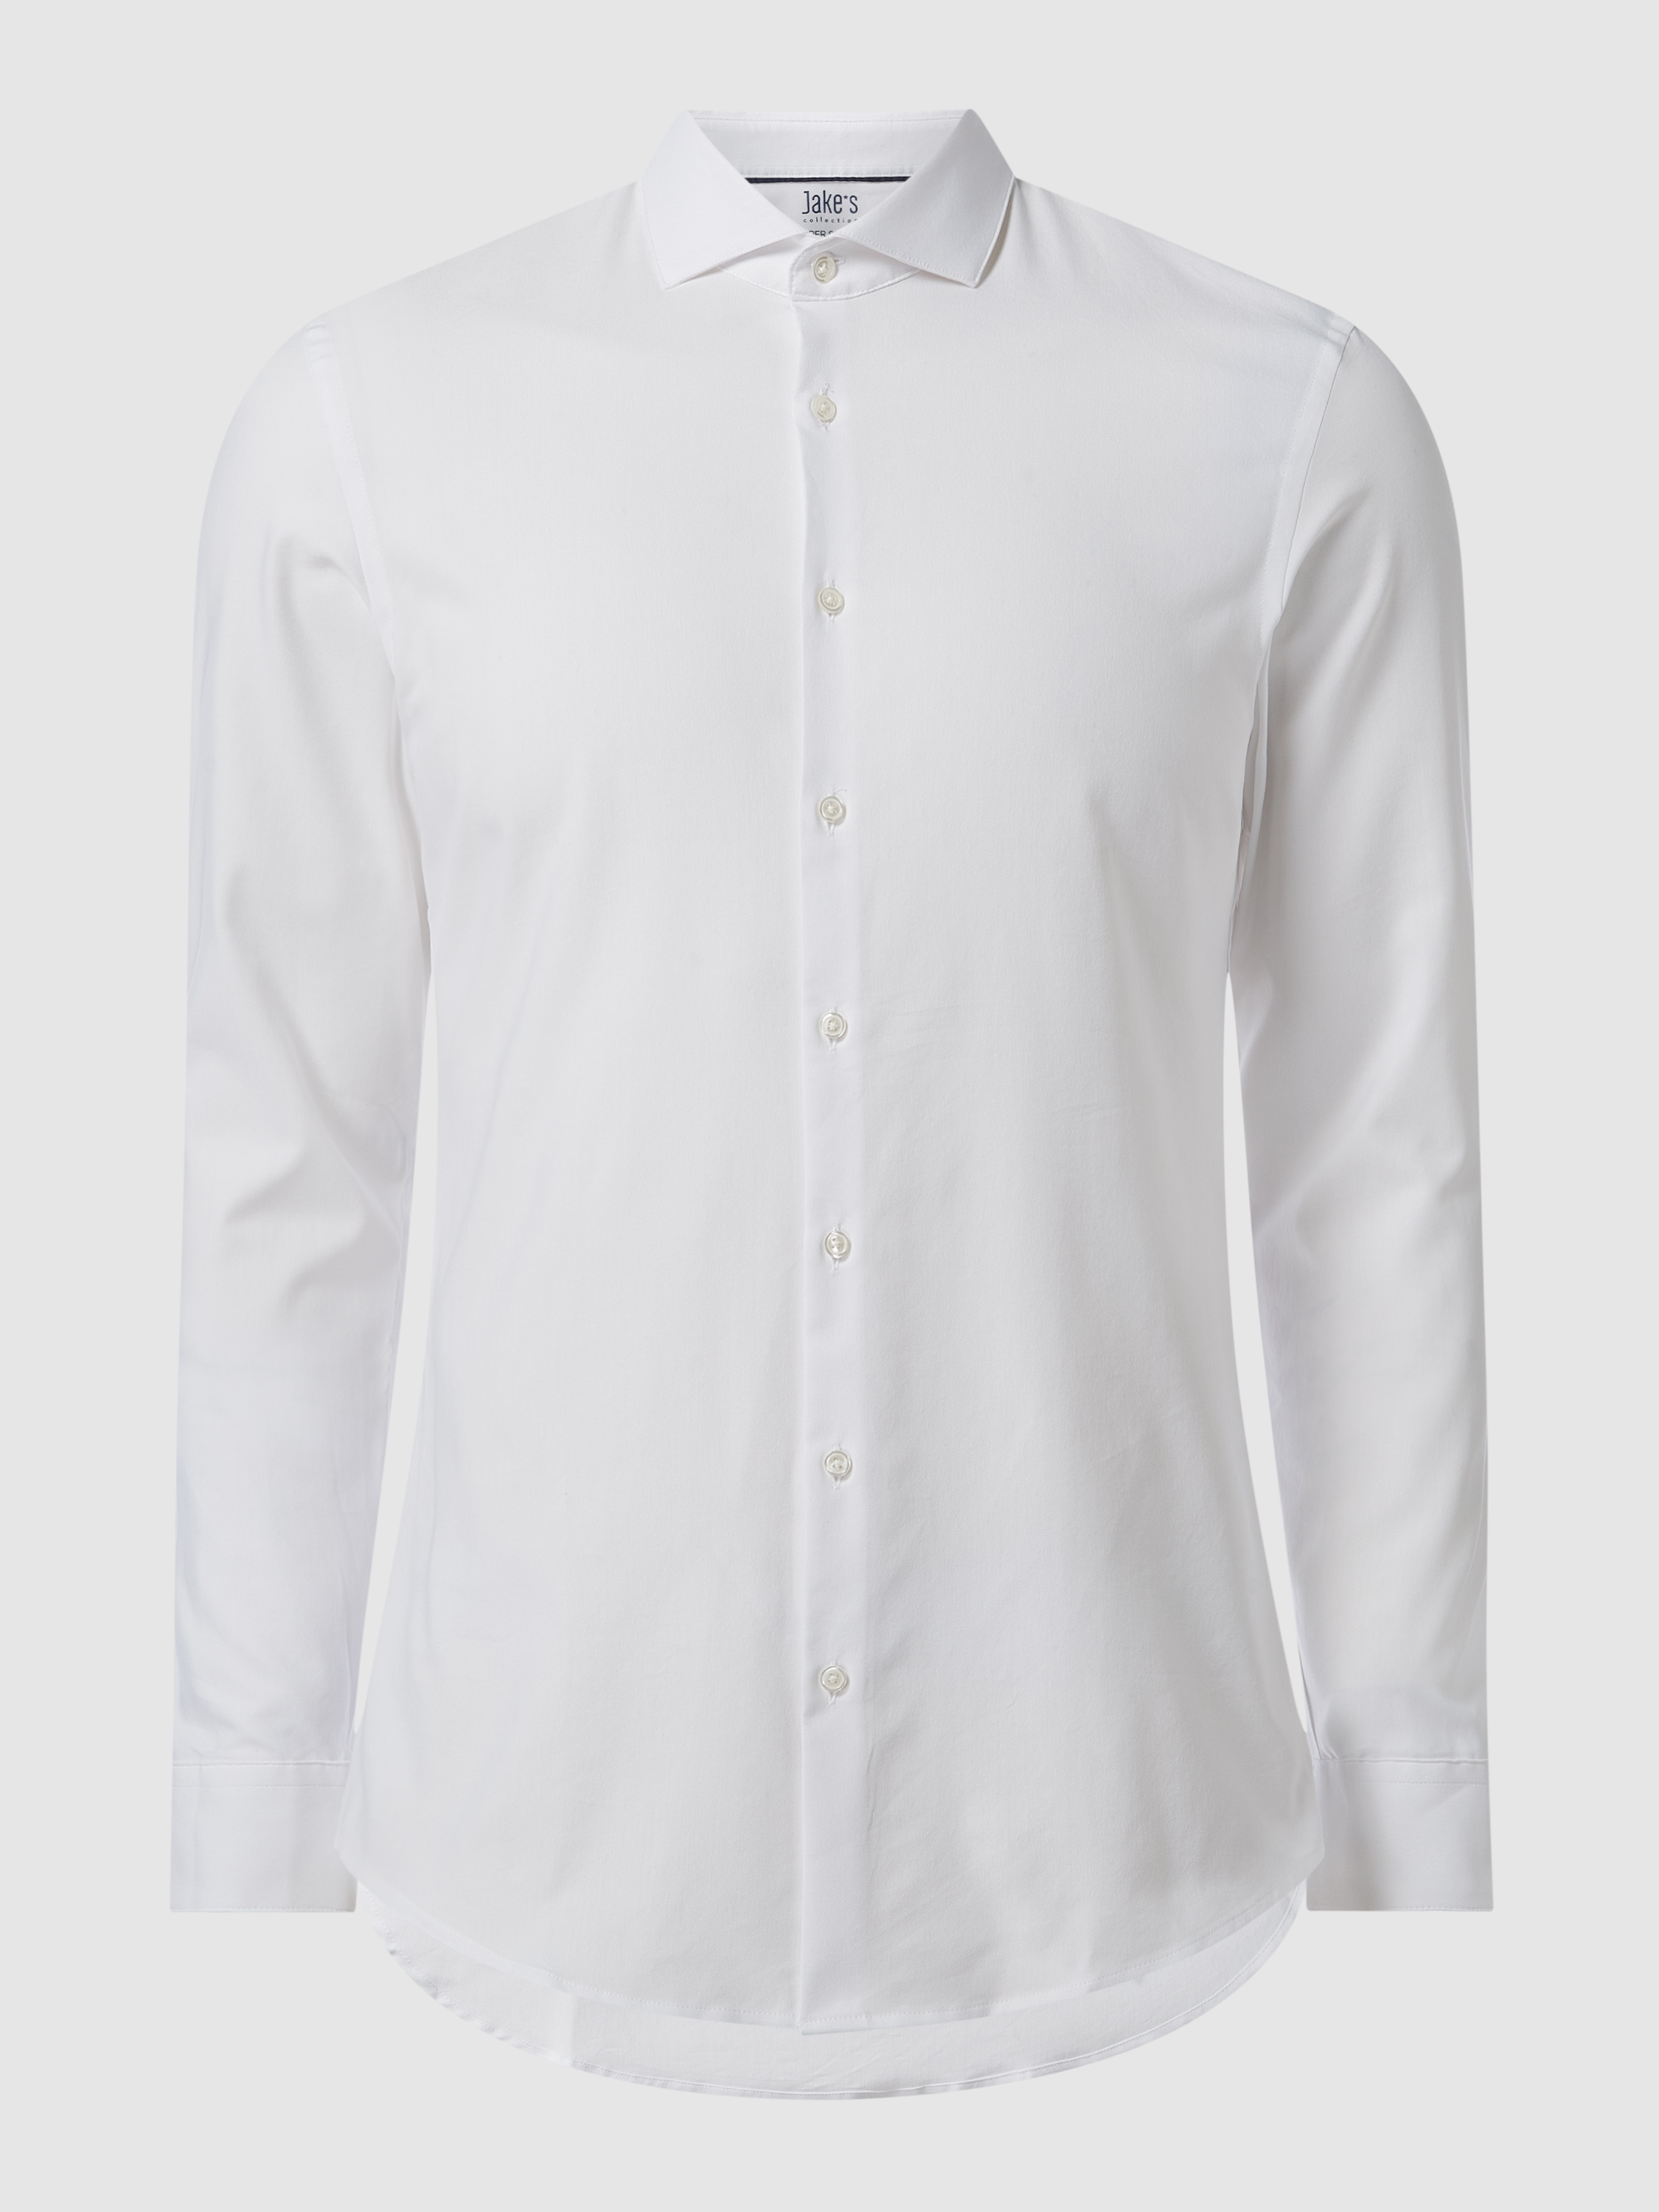 Рубашка мужская Jake*s 1465547 белая 39/40 (доставка из-за рубежа)